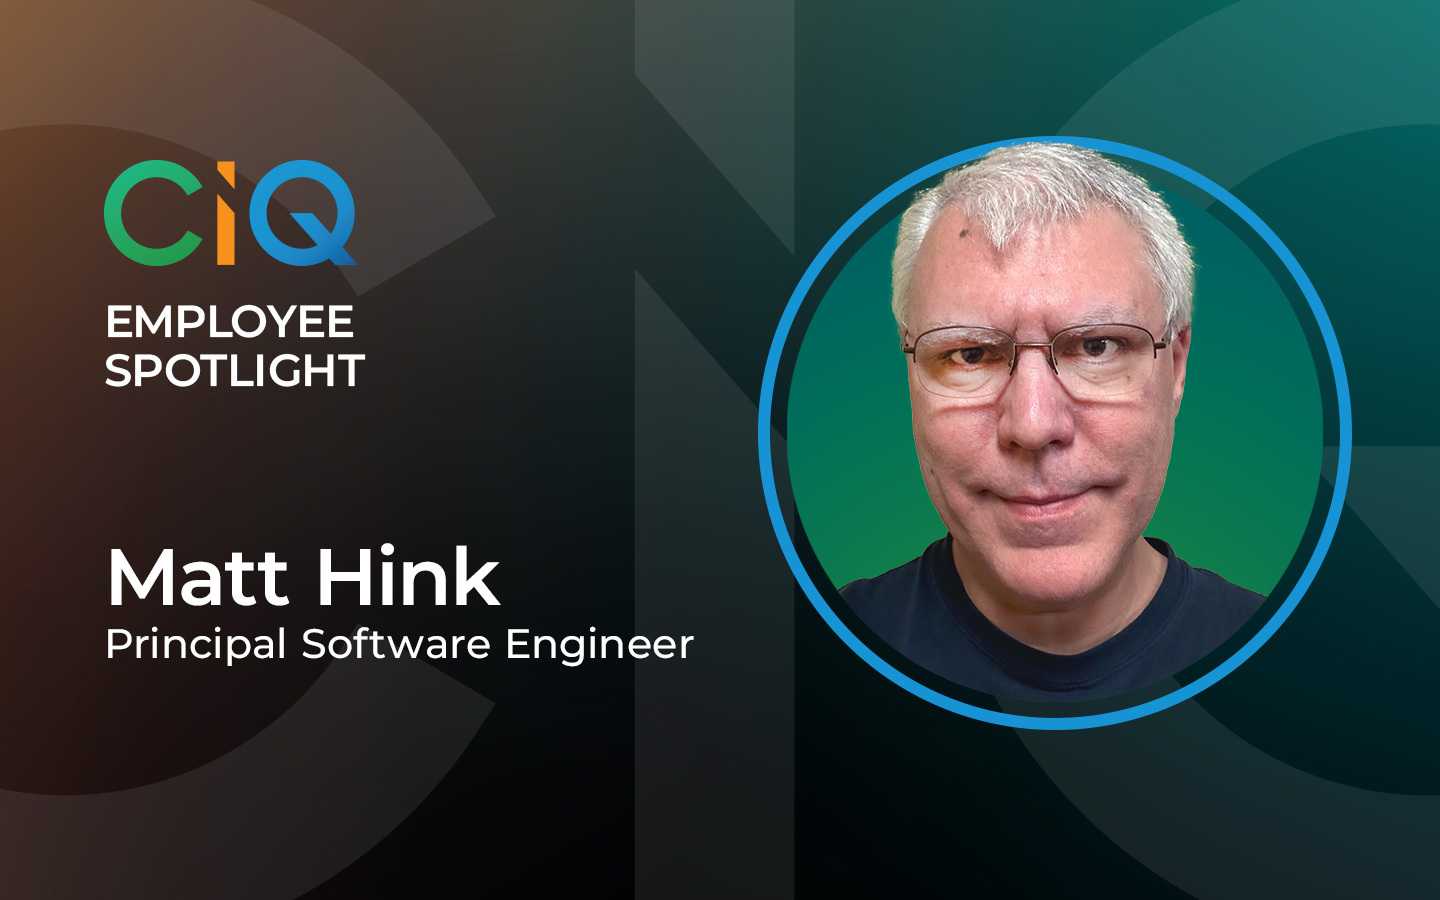 CIQ Employee Spotlight: Matt Hink